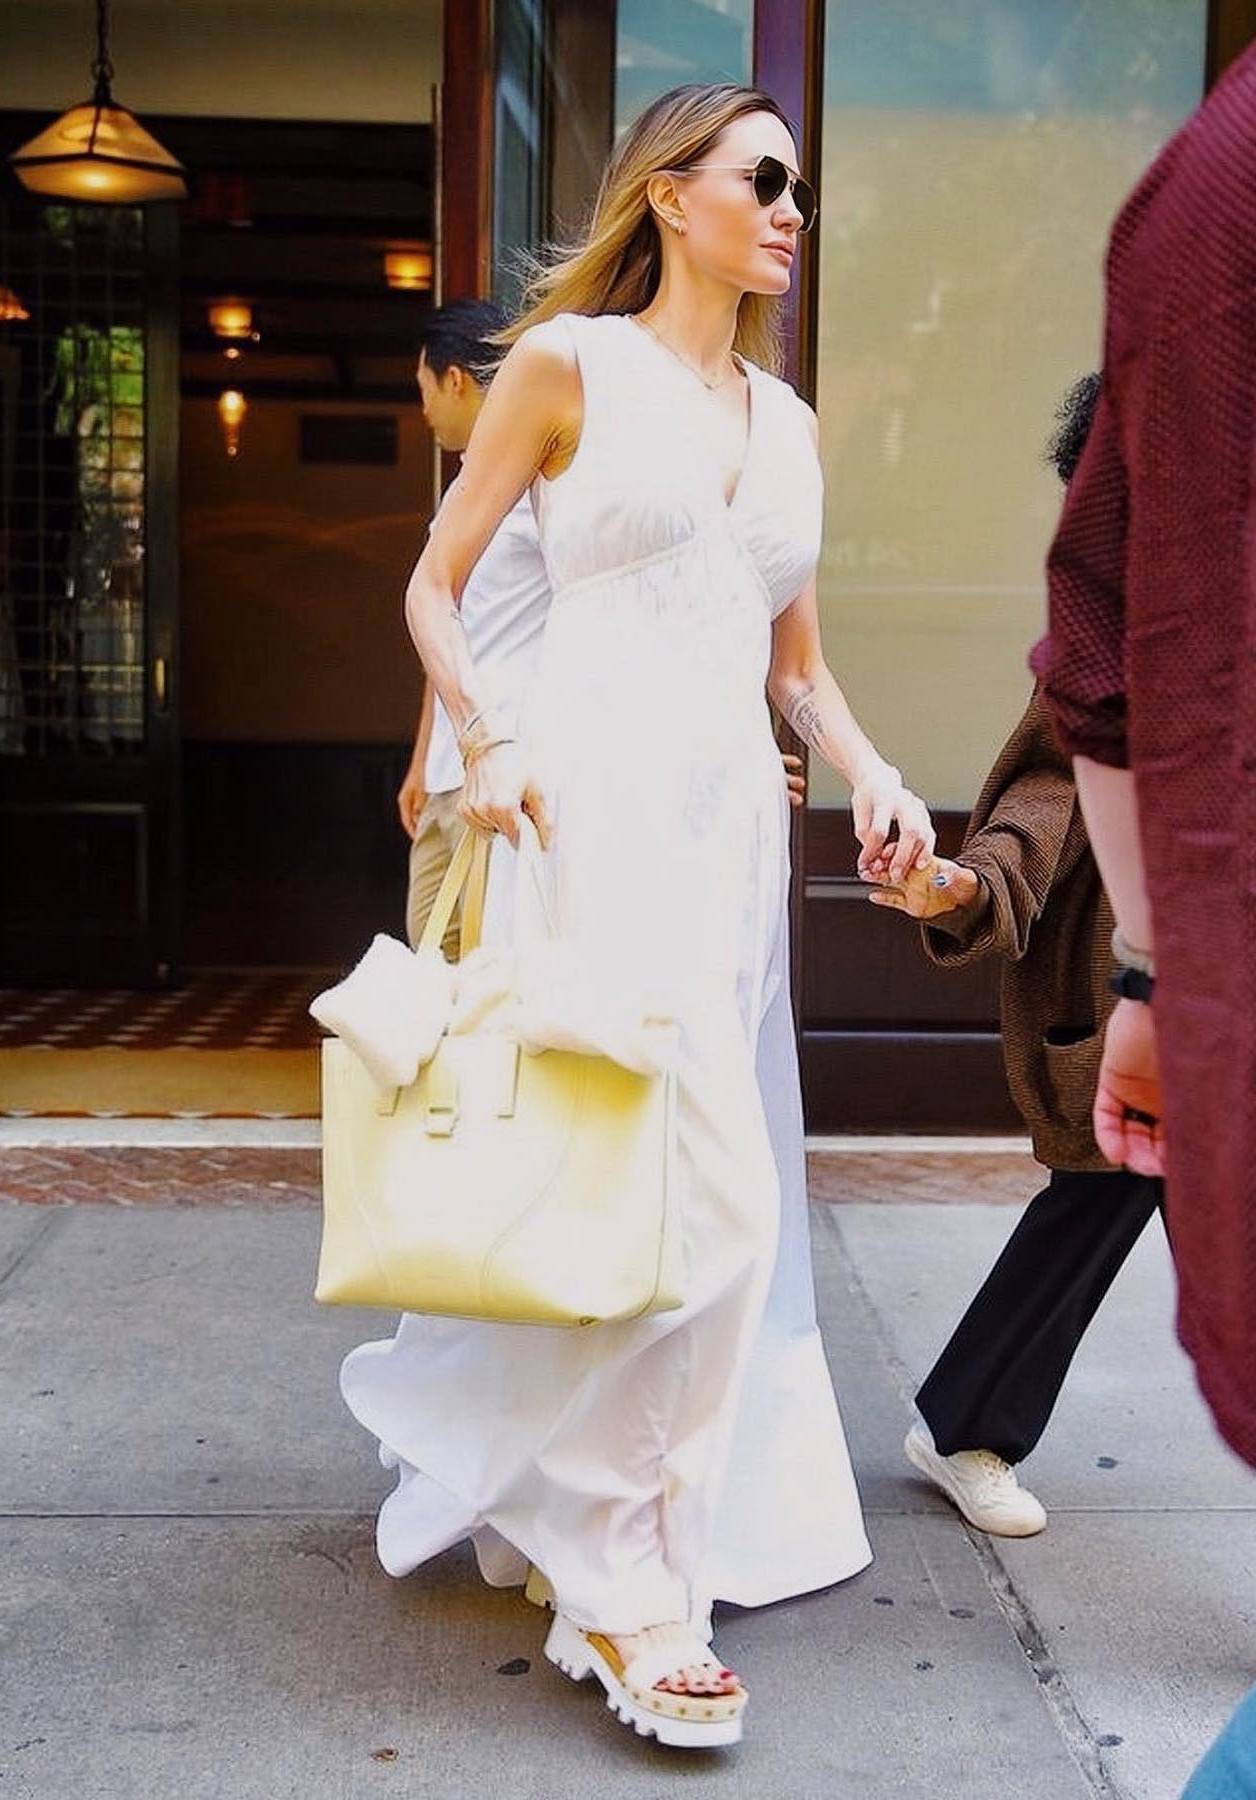 Просто, але стильно: Анджеліна Джолі у трендовій літній сукні потрапила в об'єктиви папараці